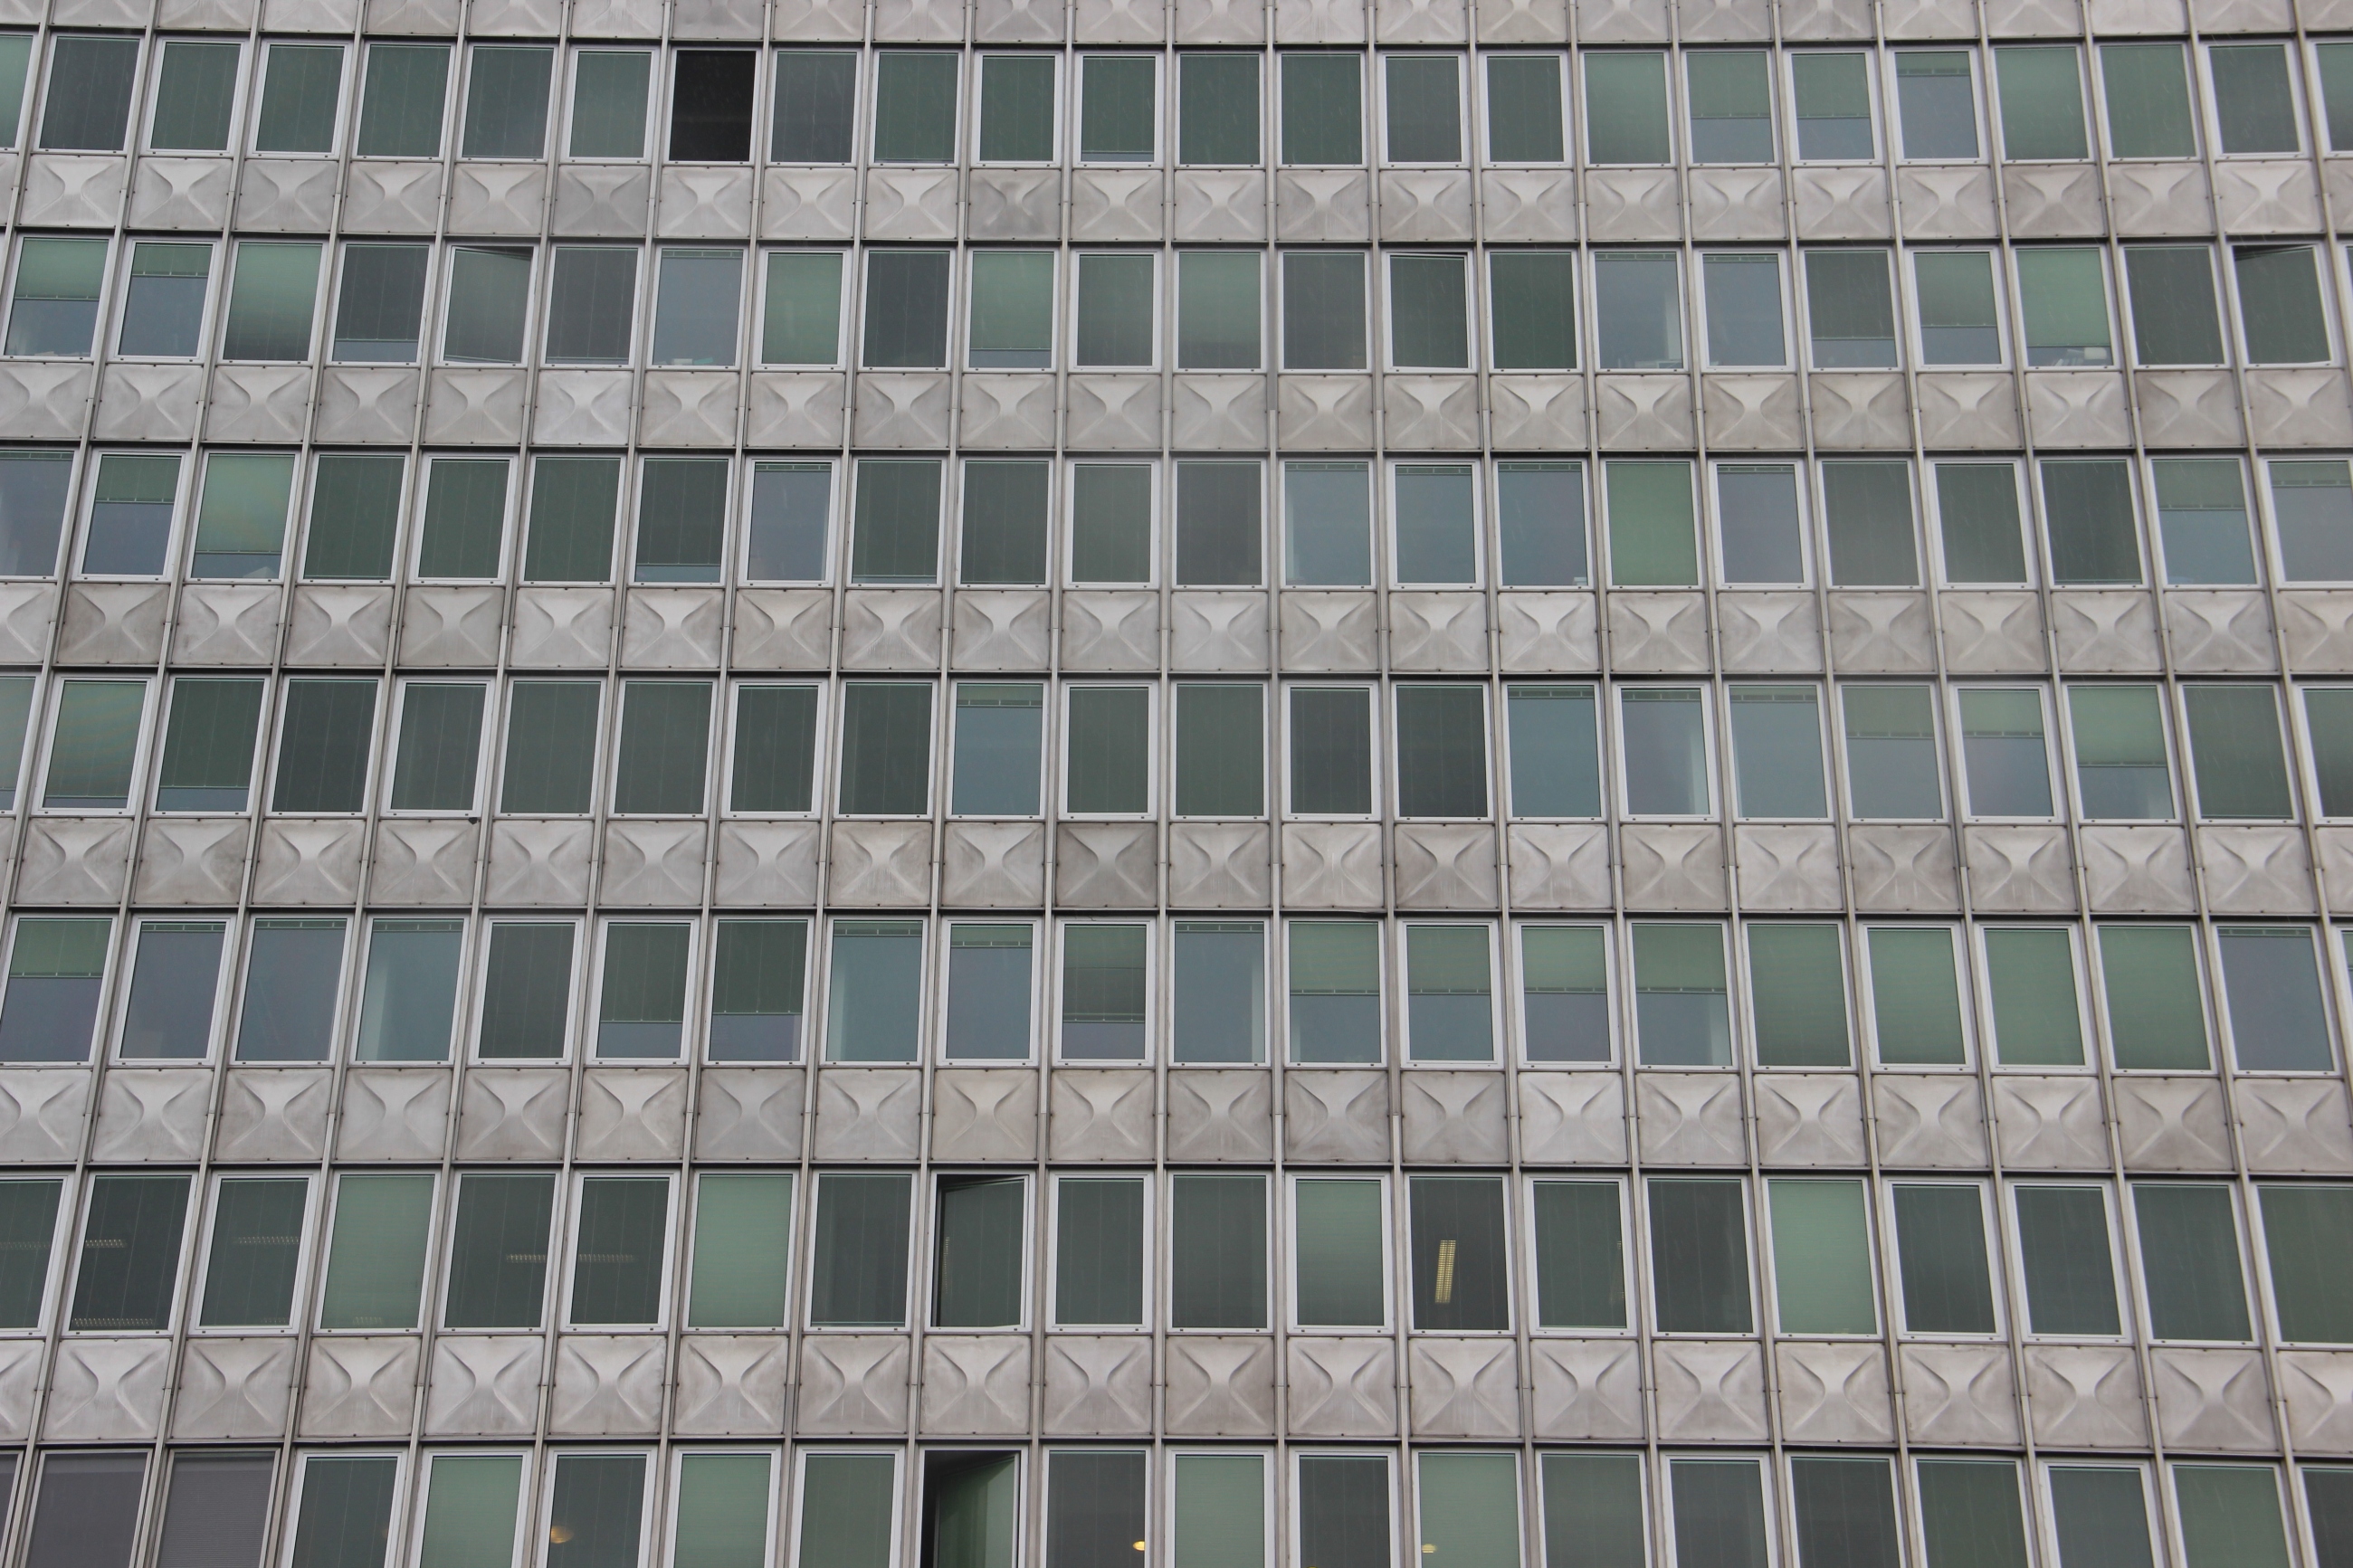 Foto: Graue moderne Fassade mit dunklen Fenstern. Hinter manchen brennt schwaches Neonlicht.